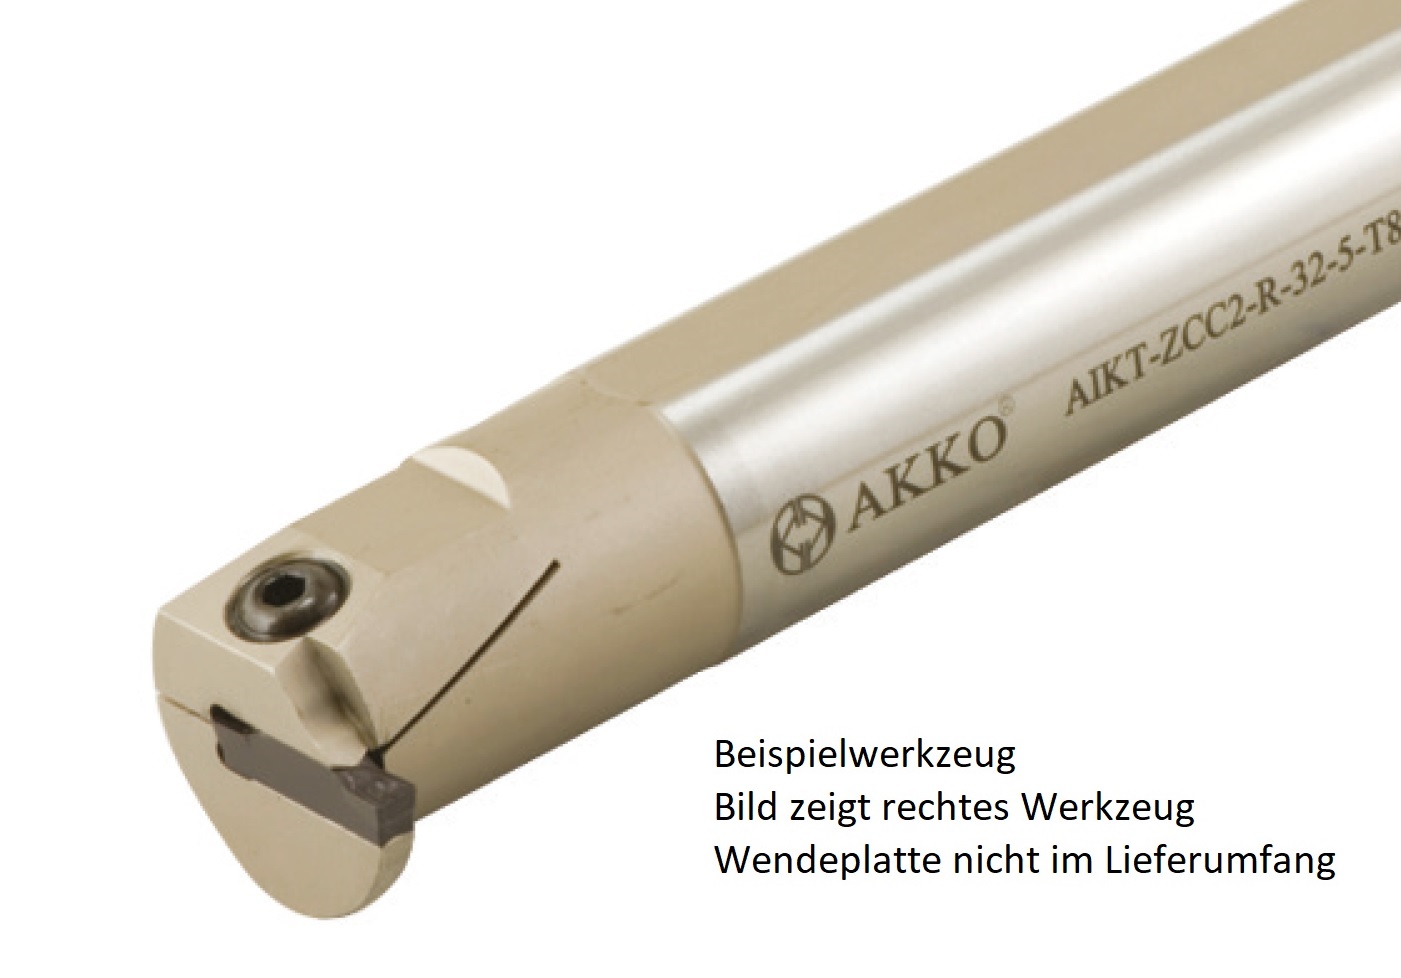 AKKO-Innen-Stechhalter, kompatibel mit ZCC-Stechplatte Z.BD-2
Schaft-ø 16, ohne Innenkühlung, rechts